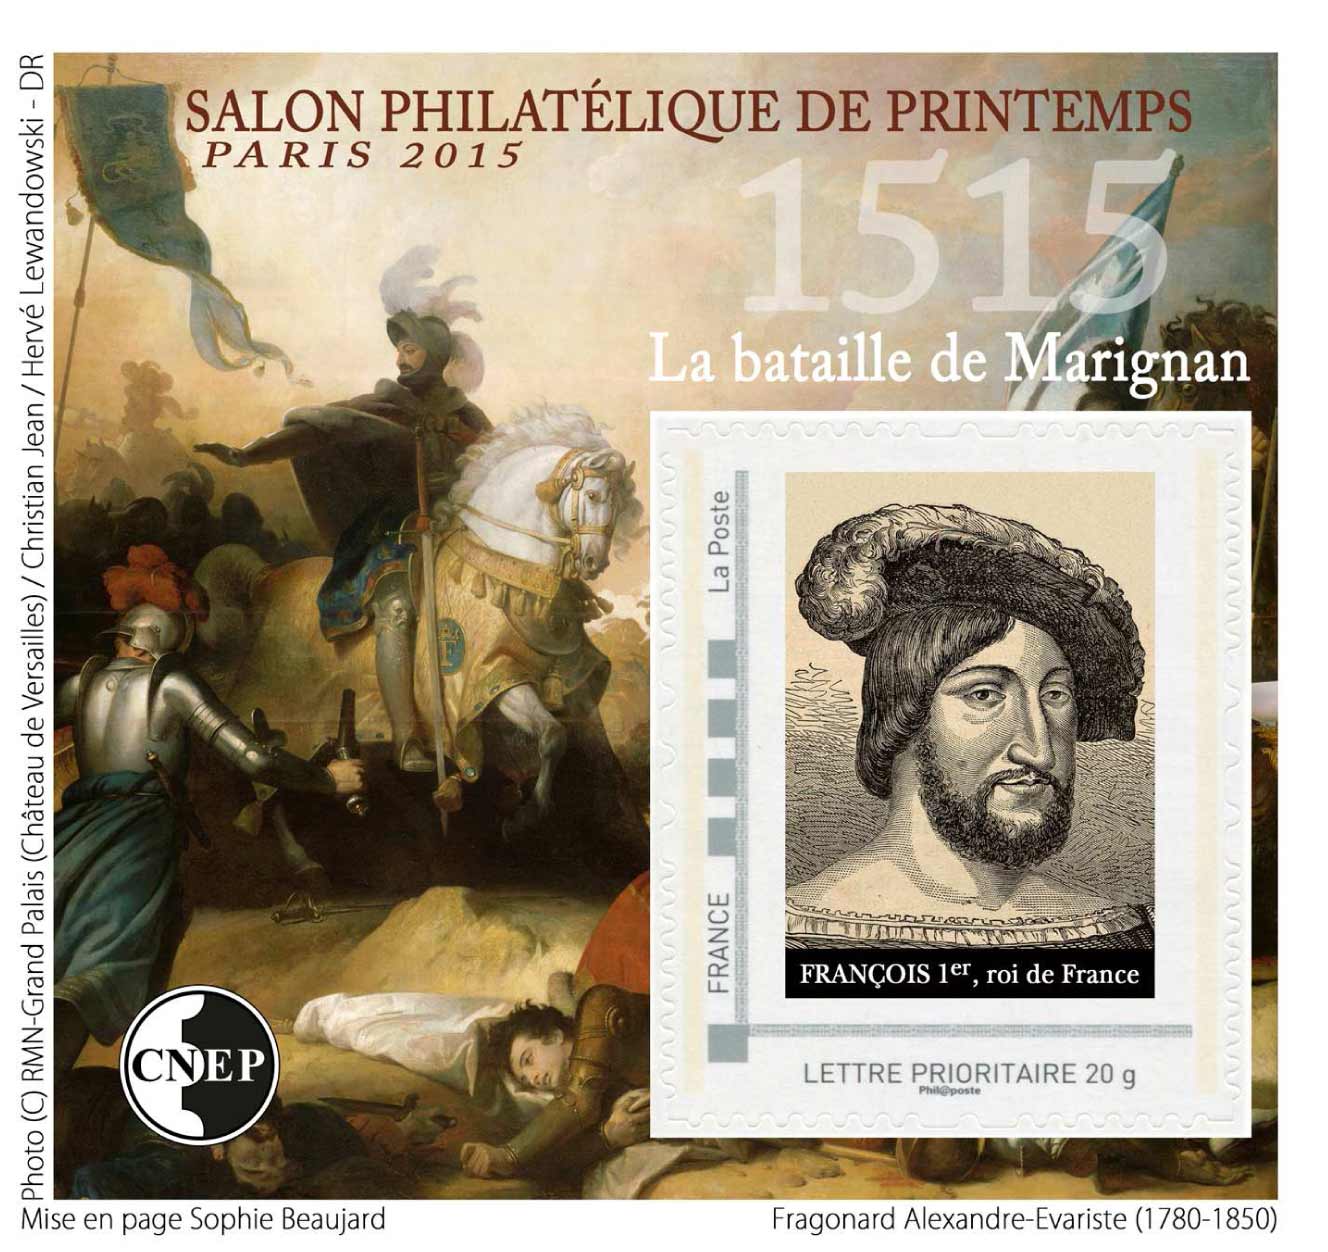 Salon philatélique de printemps Paris 2015 - 1515 La bataille de Marig